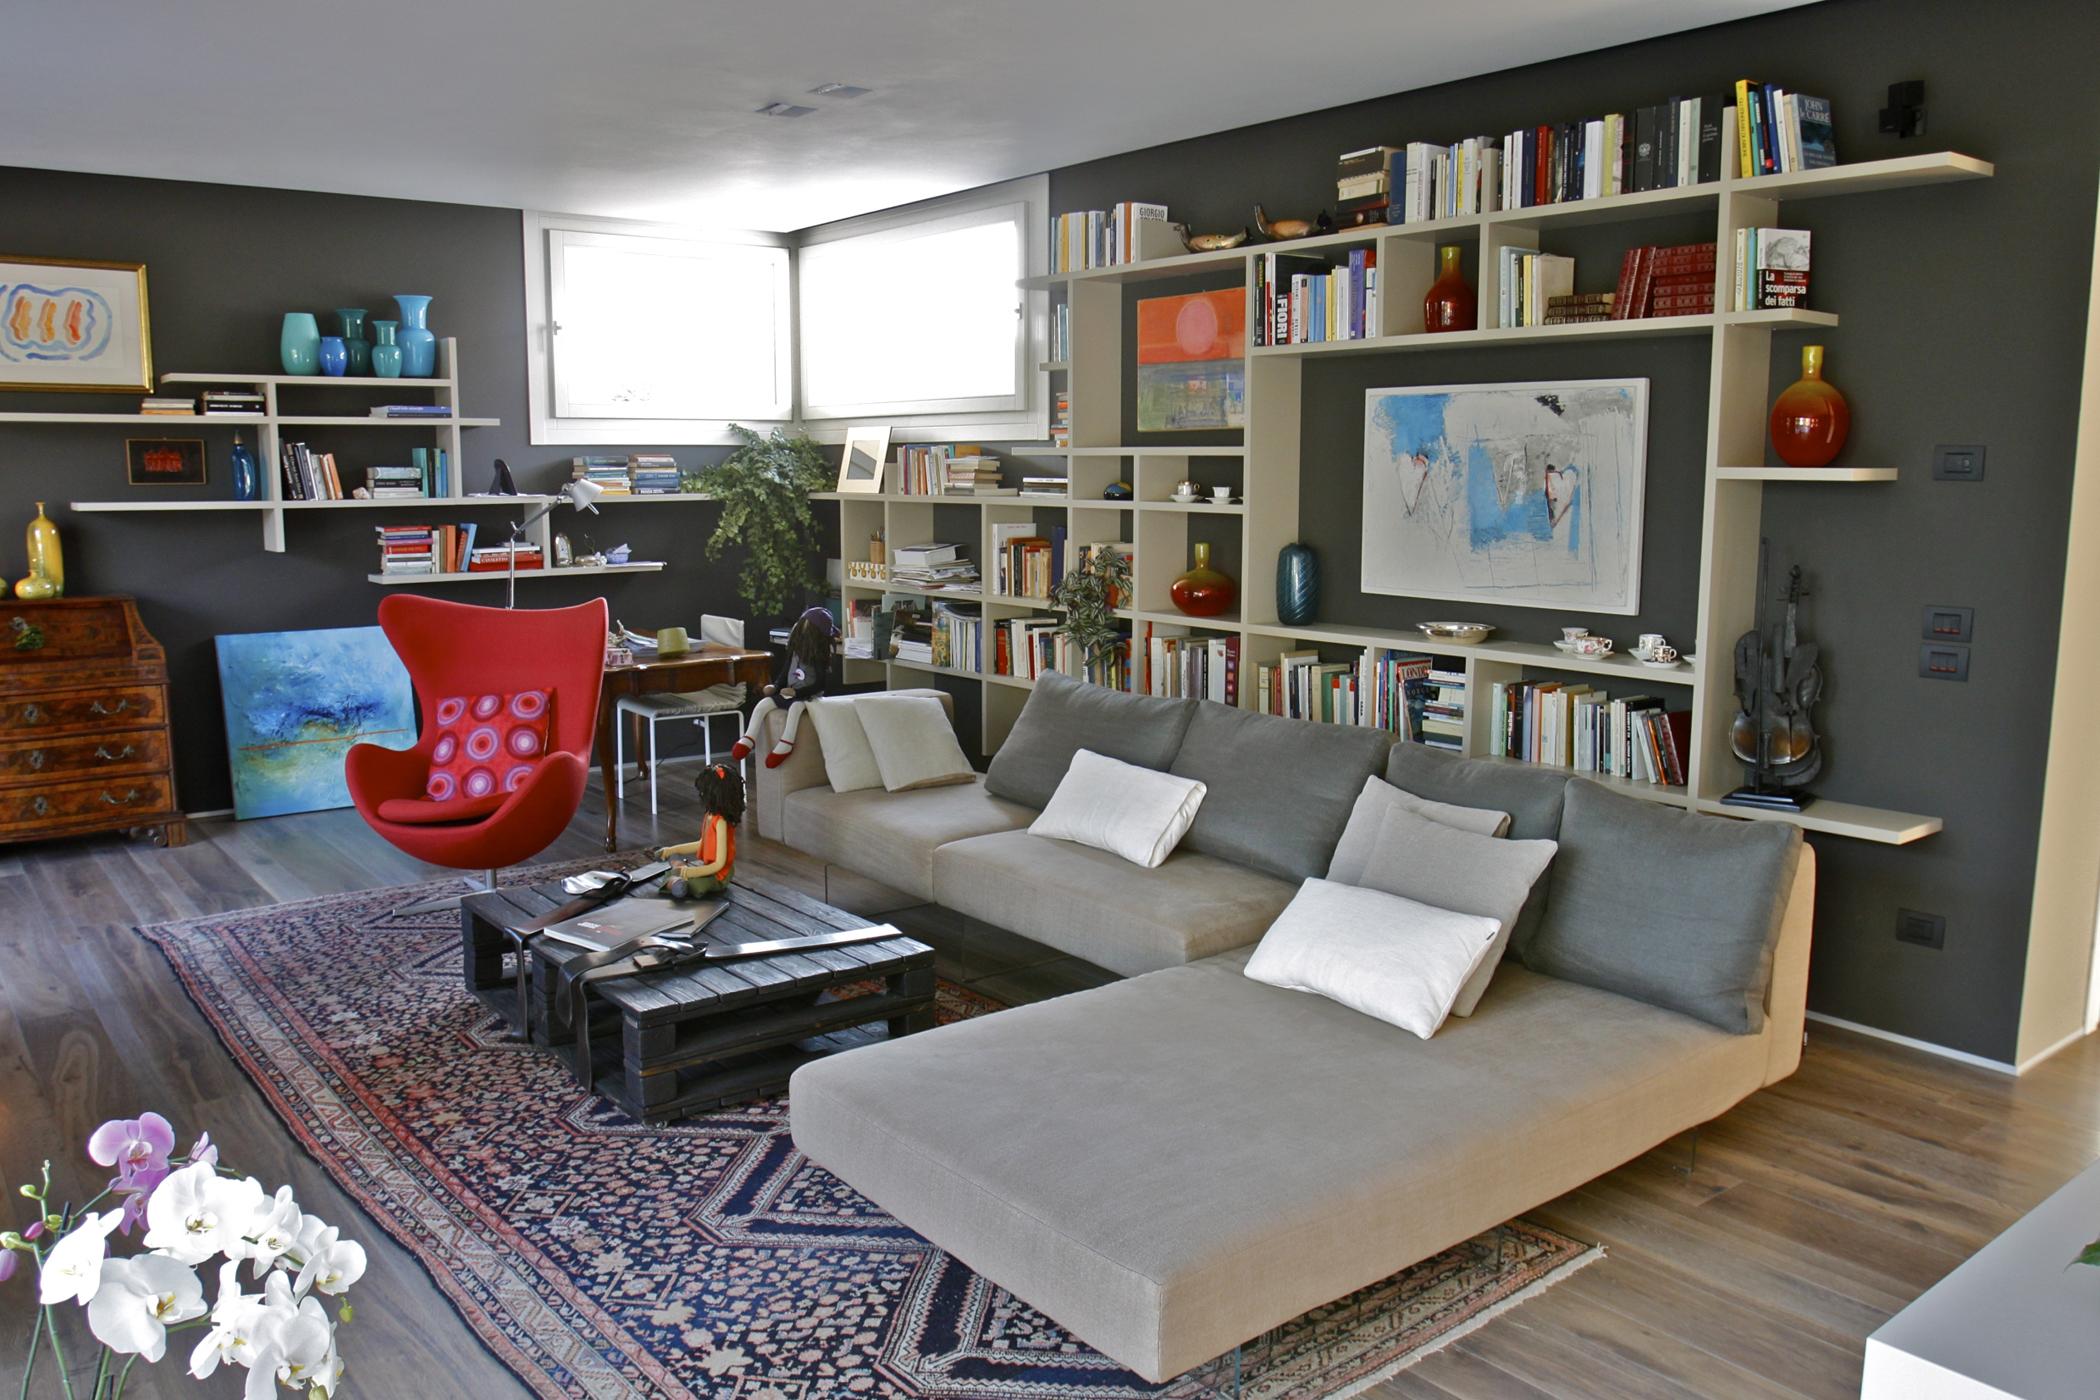 Gemütliches Lounge-Sofa #couchtisch #regal #wandregal #teppich #aufbewahrung #kommode #sofa #ottomane #wohnwand ©Lago